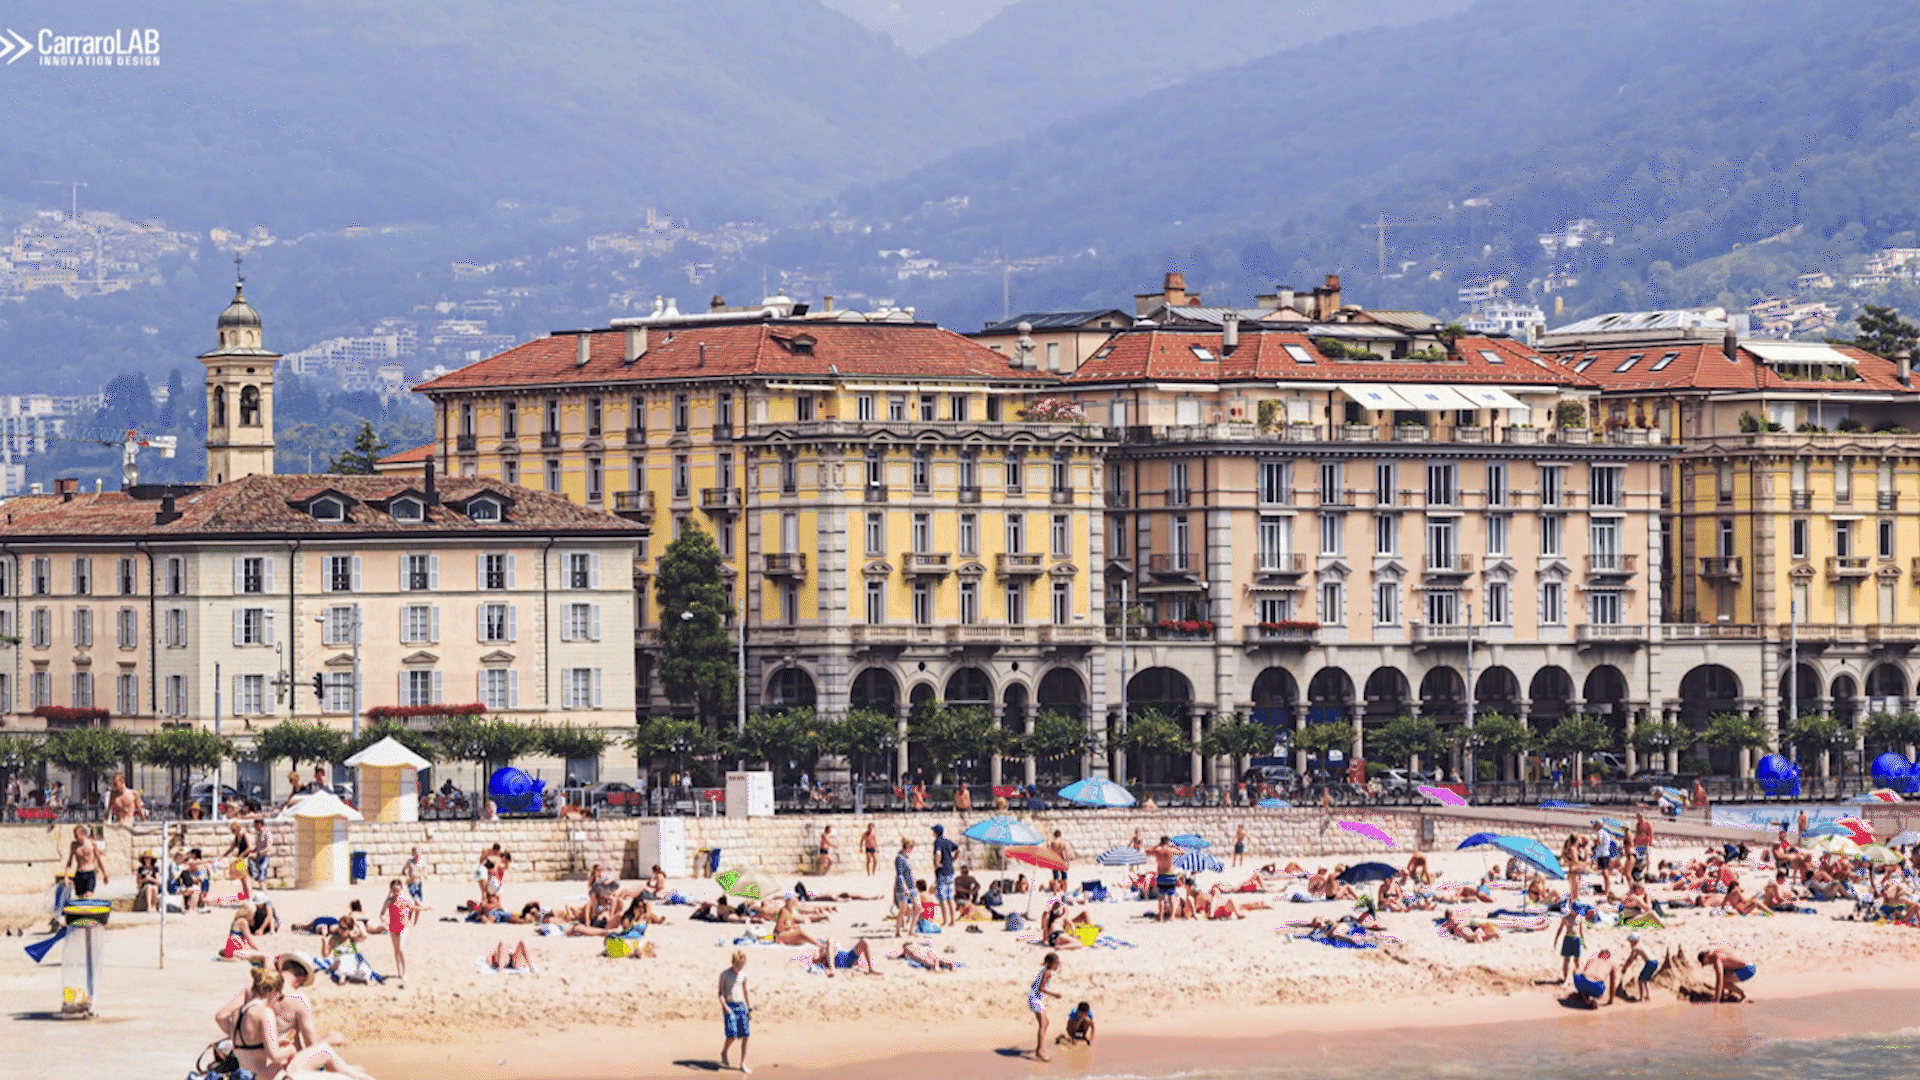 Immagini alternate del litorale di Lugano con e senza elaborazione grafica di una spiaggia